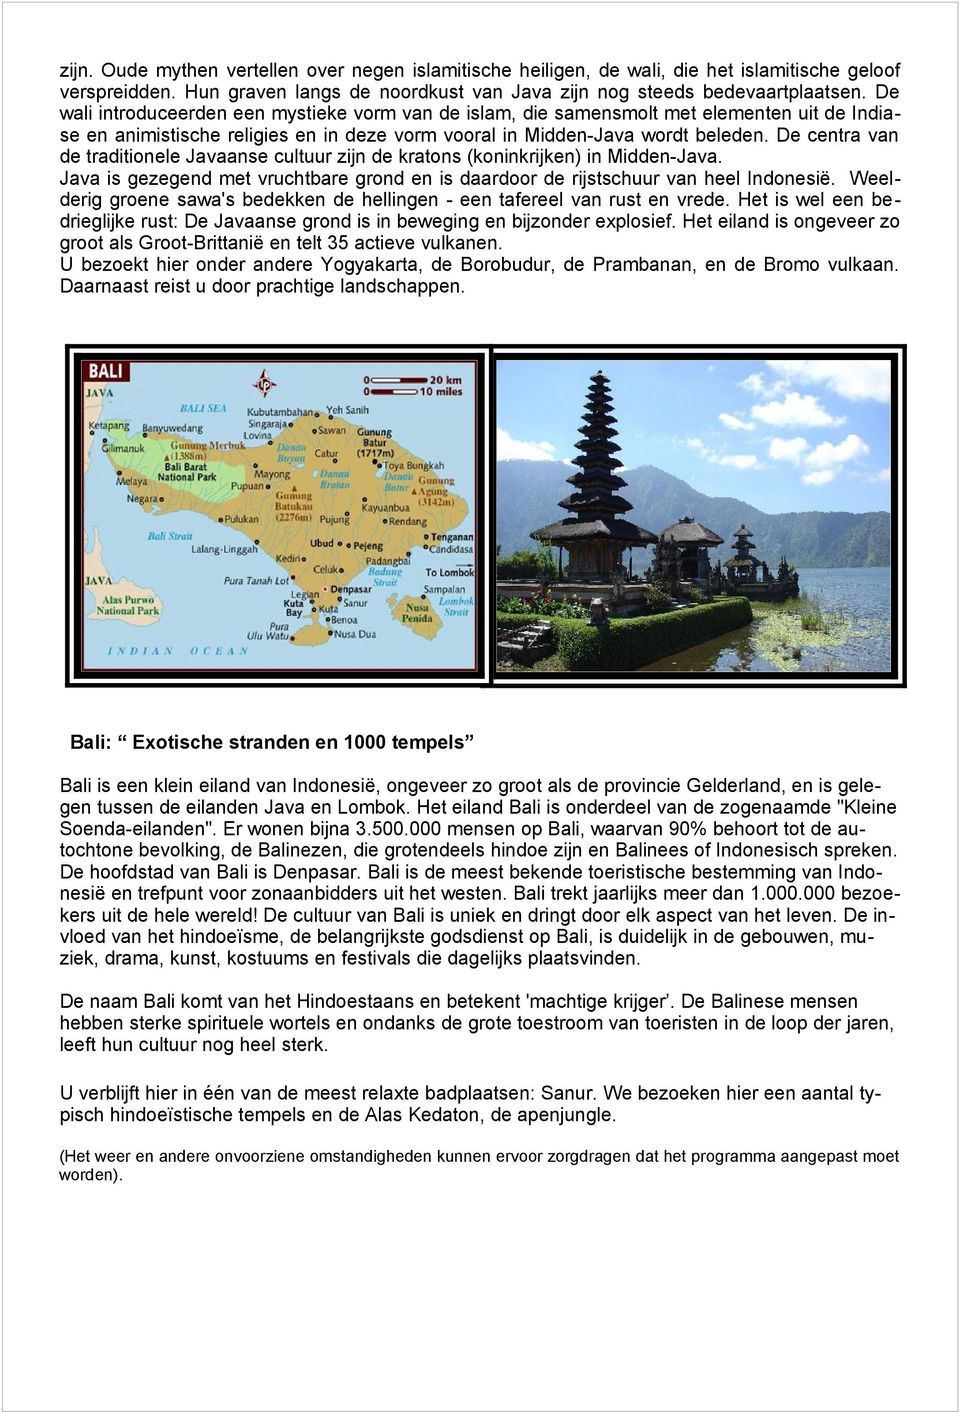 De centra van de traditionele Javaanse cultuur zijn de kratons (koninkrijken) in Midden-Java. Java is gezegend met vruchtbare grond en is daardoor de rijstschuur van heel Indonesië.